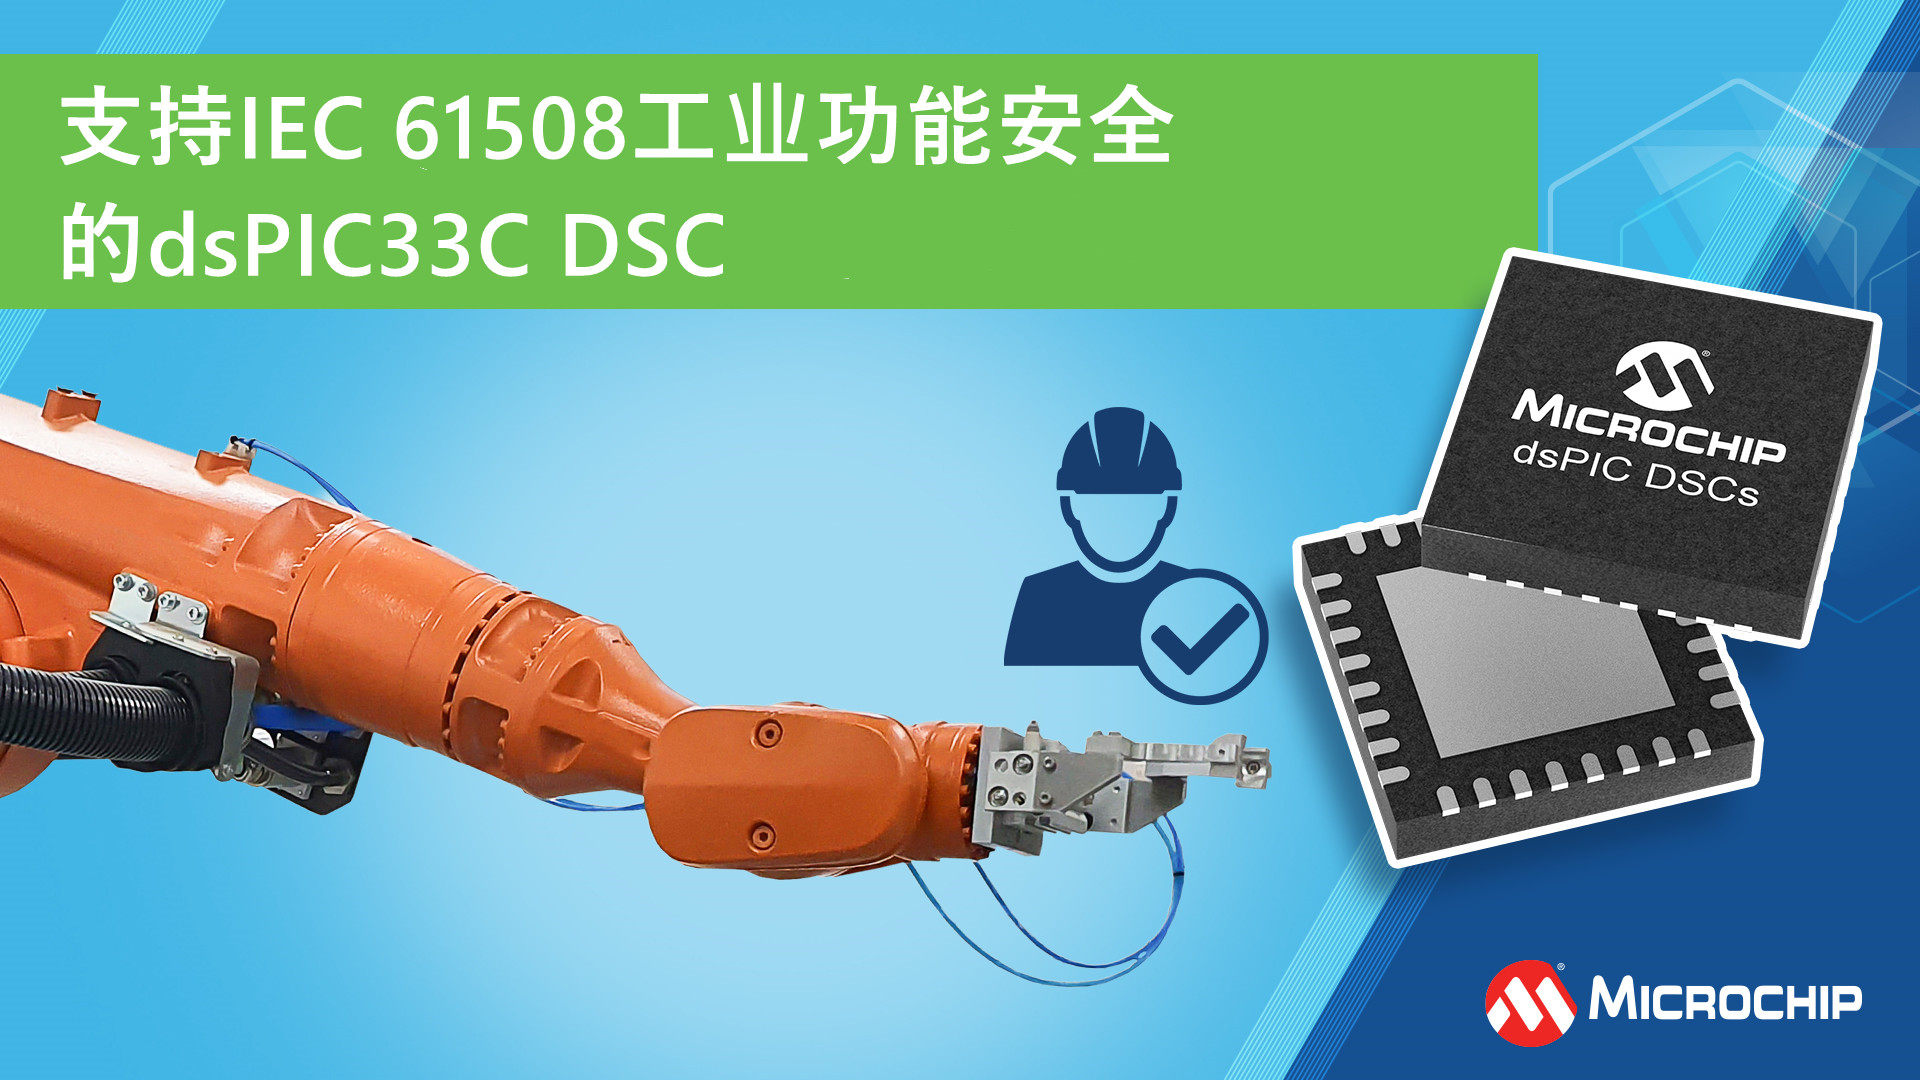 支持IEC 61508工业功能安全的dsPIC33C DSC